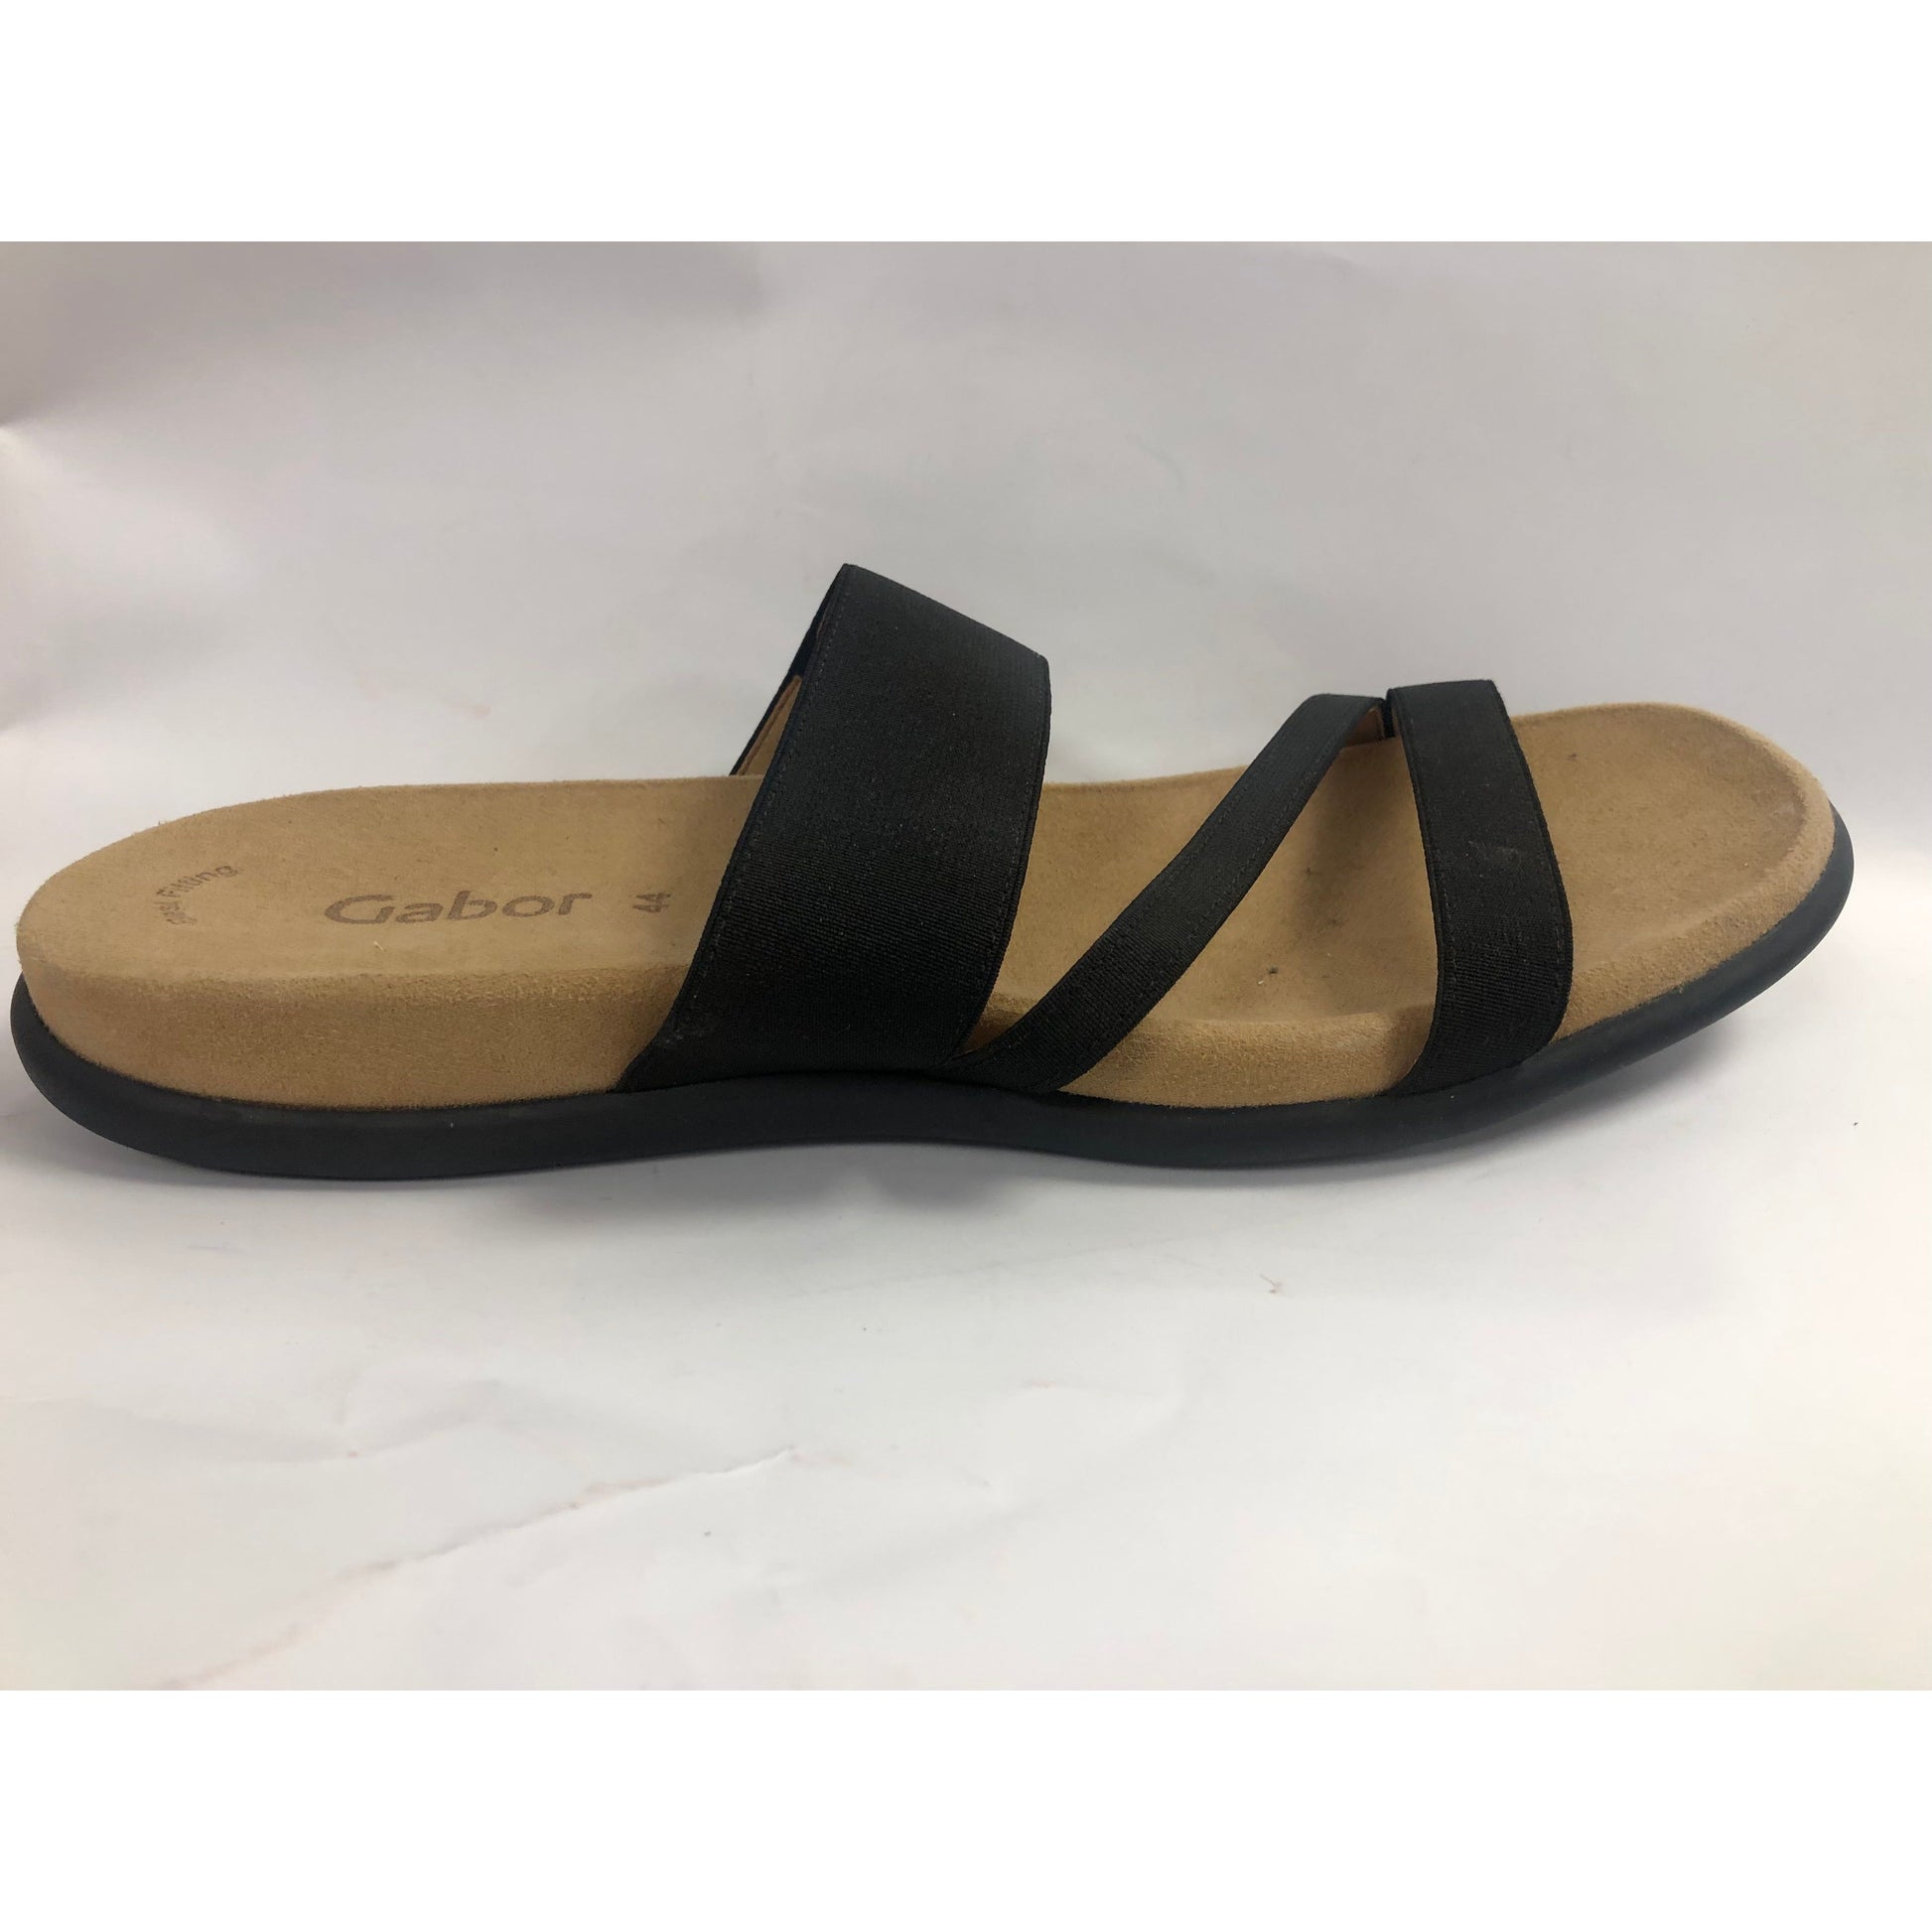 GABOR  sandaler elastisk


GABOR  sandaler elastisk svart 




